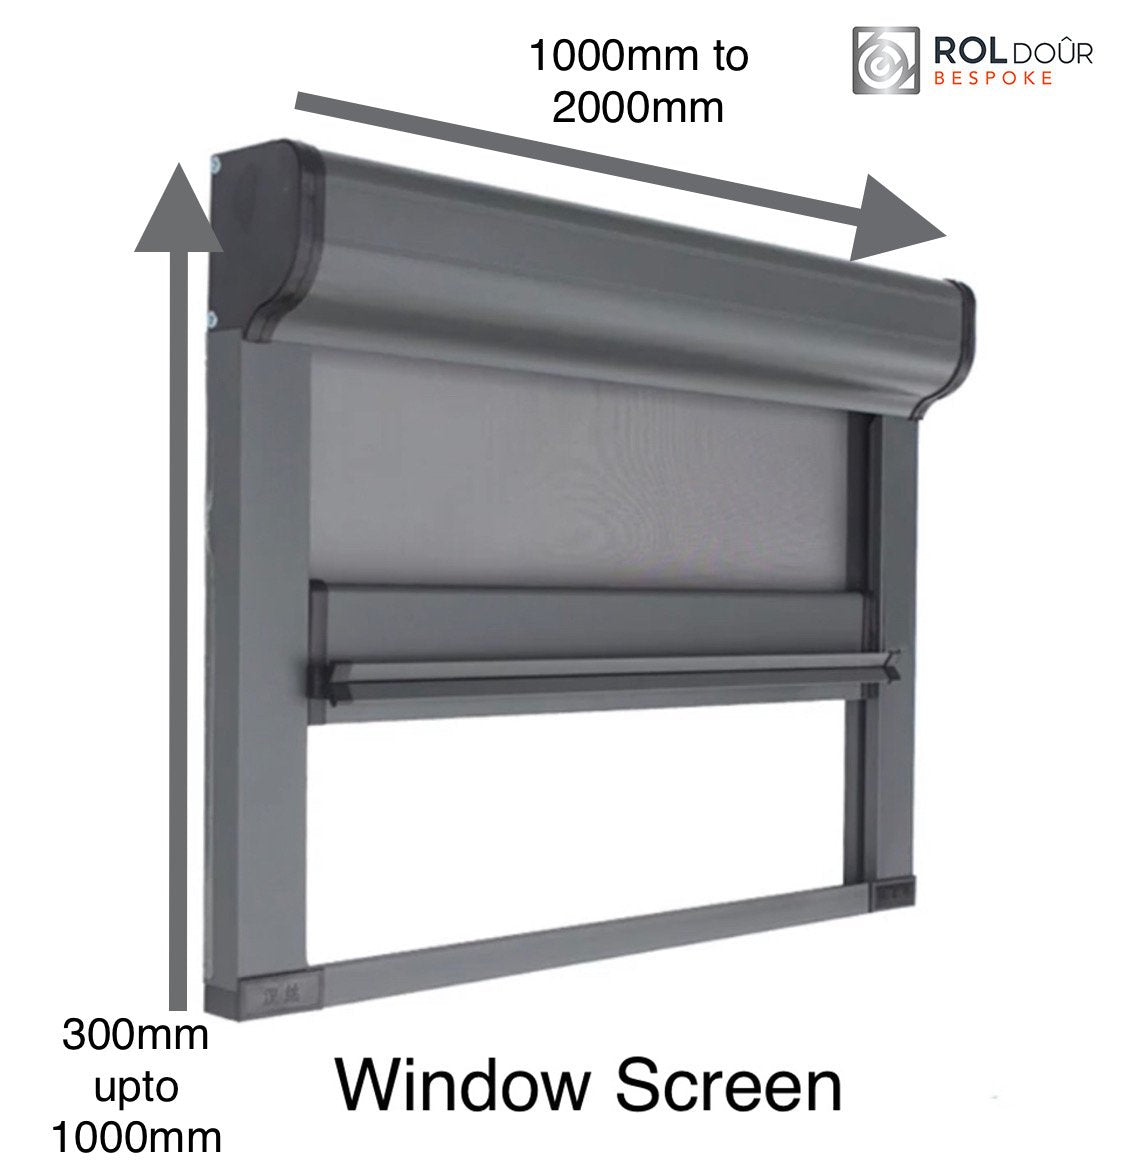 ROLdour Duo Screen Retractable door kit - Golden Oak frame 1000mm up to 2000mm tall options-TAMdour-door,duo screen,golden oak,retractable door,ROLdour,shower,shower door